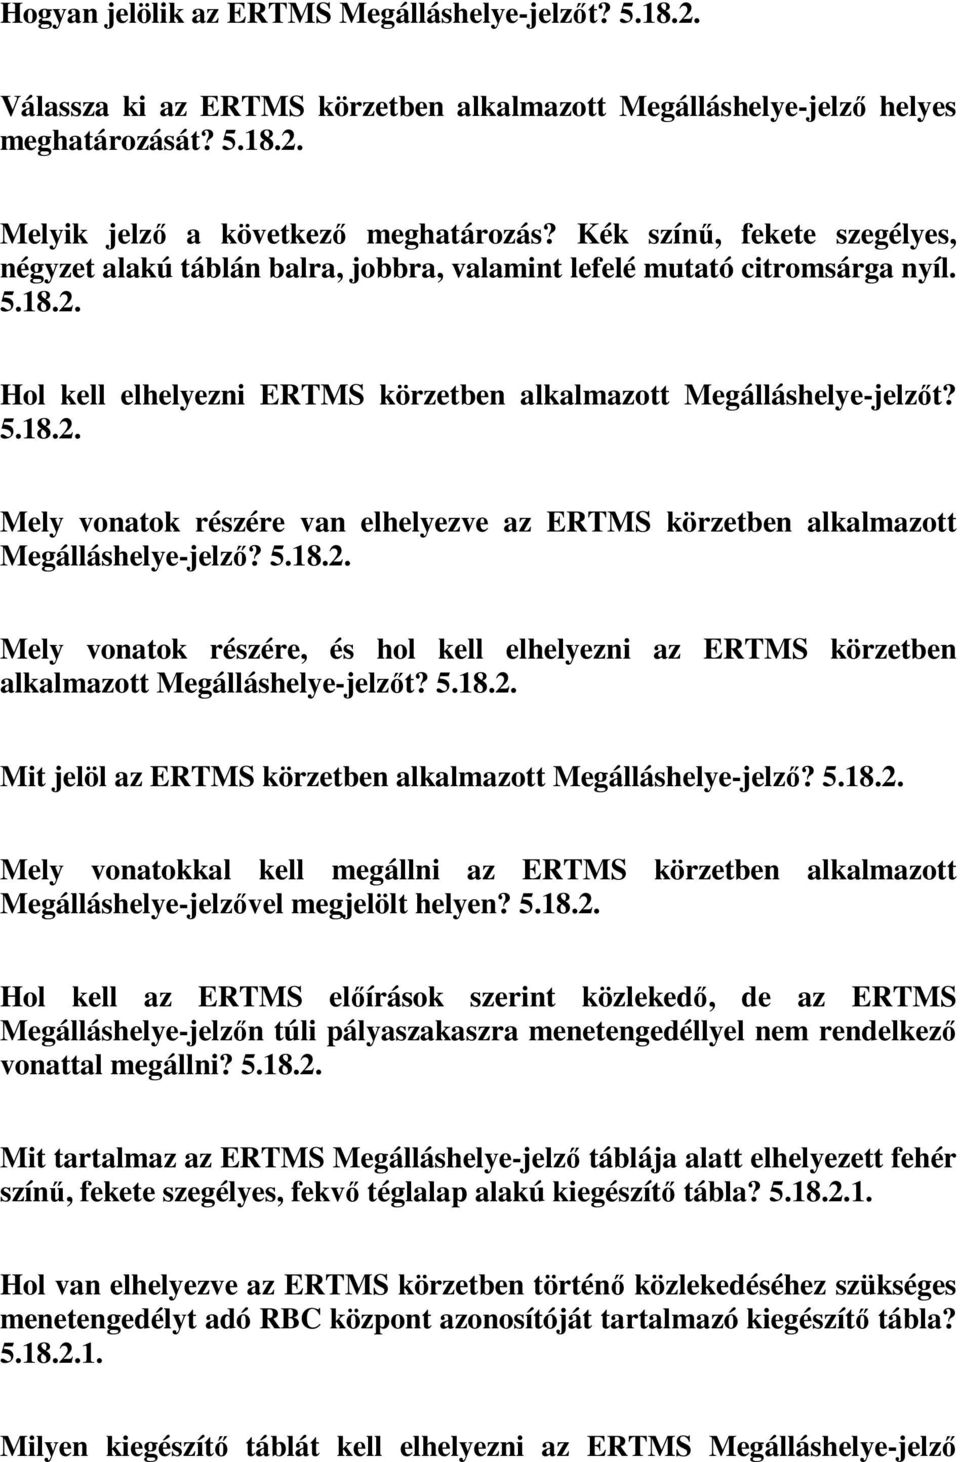 Hol kell elhelyezni ERTMS körzetben alkalmazott Megálláshelye-jelzőt? 5.18.2. Mely vonatok részére van elhelyezve az ERTMS körzetben alkalmazott Megálláshelye-jelző? 5.18.2. Mely vonatok részére, és hol kell elhelyezni az ERTMS körzetben alkalmazott Megálláshelye-jelzőt?